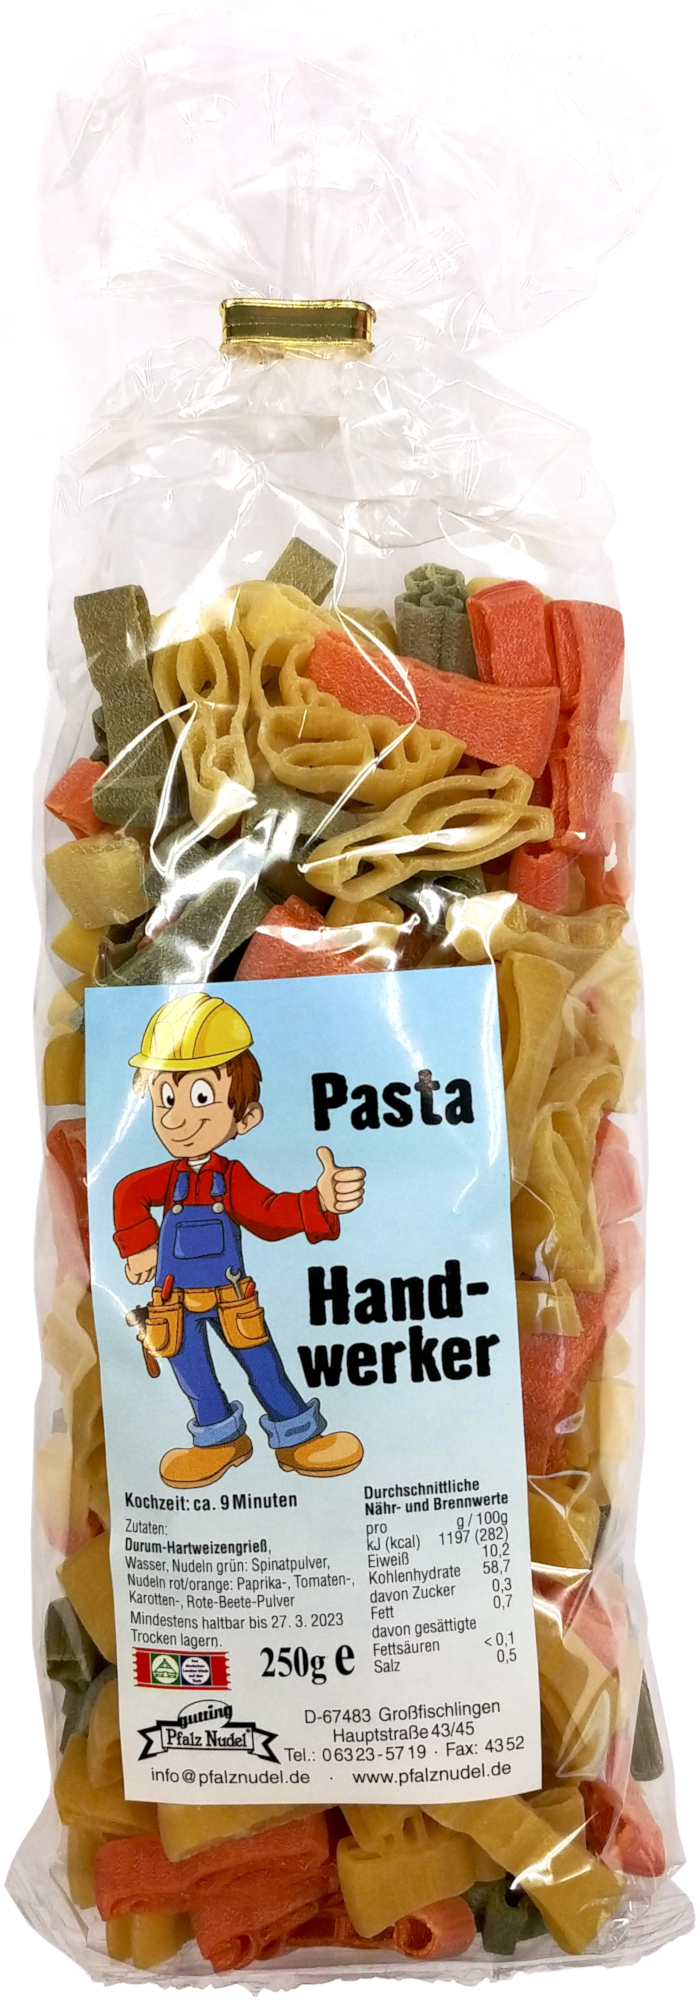 Pasta Handwerker